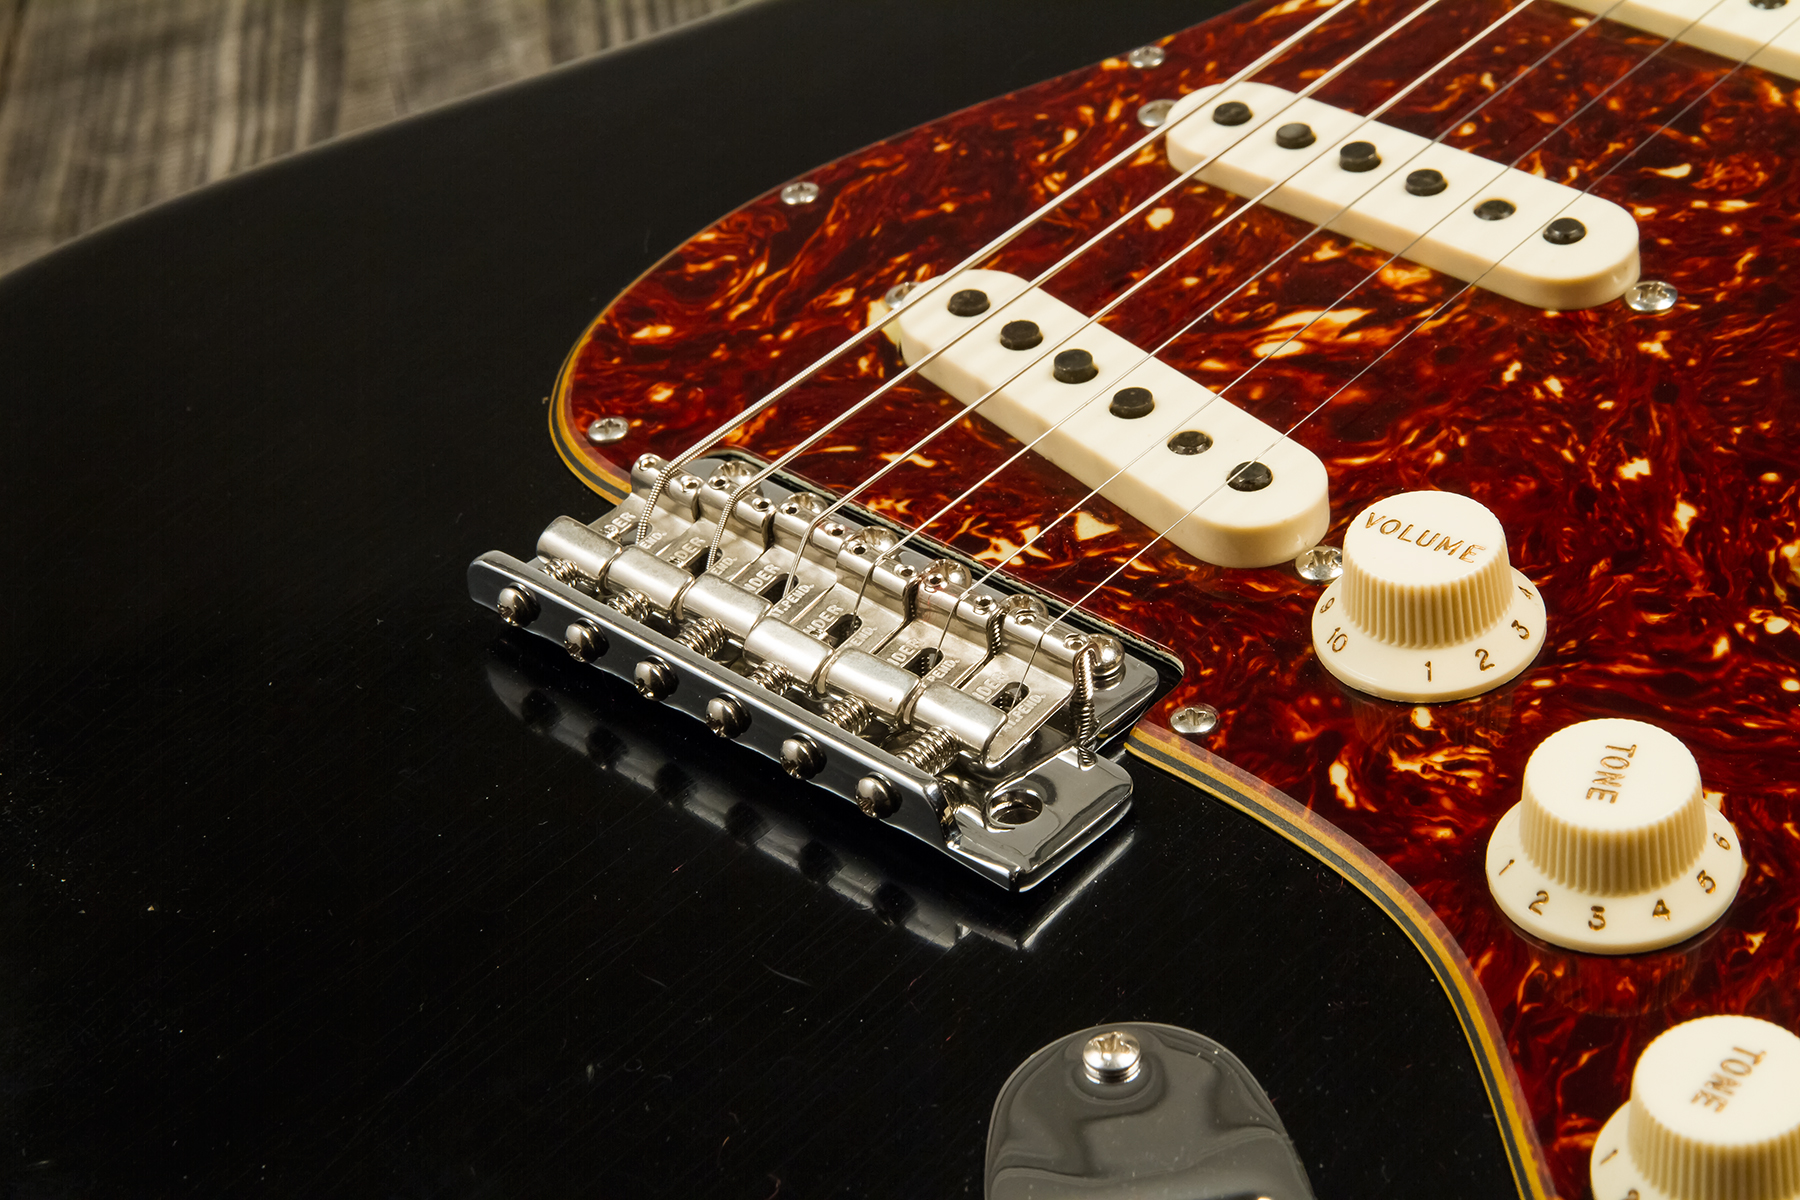 Fender Custom Shop Strat Postmodern 3s Trem Rw #xn13616 - Journeyman Relic Aged Black - Elektrische gitaar in Str-vorm - Variation 4